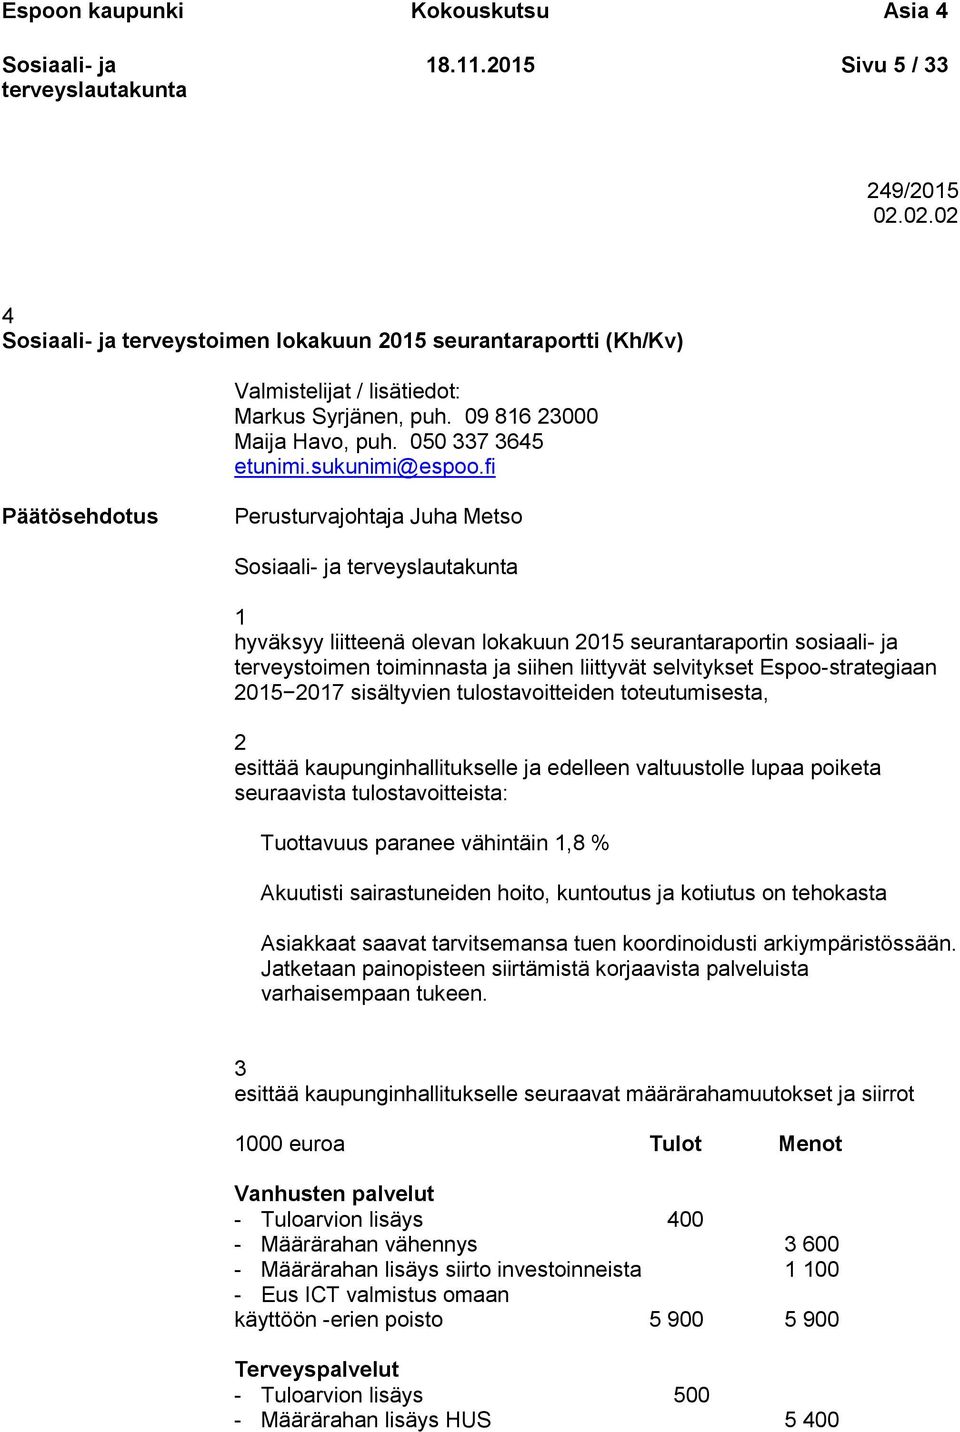 fi Päätösehdotus Perusturvajohtaja Juha Metso 1 hyväksyy liitteenä olevan lokakuun 2015 seurantaraportin sosiaali- ja terveystoimen toiminnasta ja siihen liittyvät selvitykset Espoo-strategiaan 2015